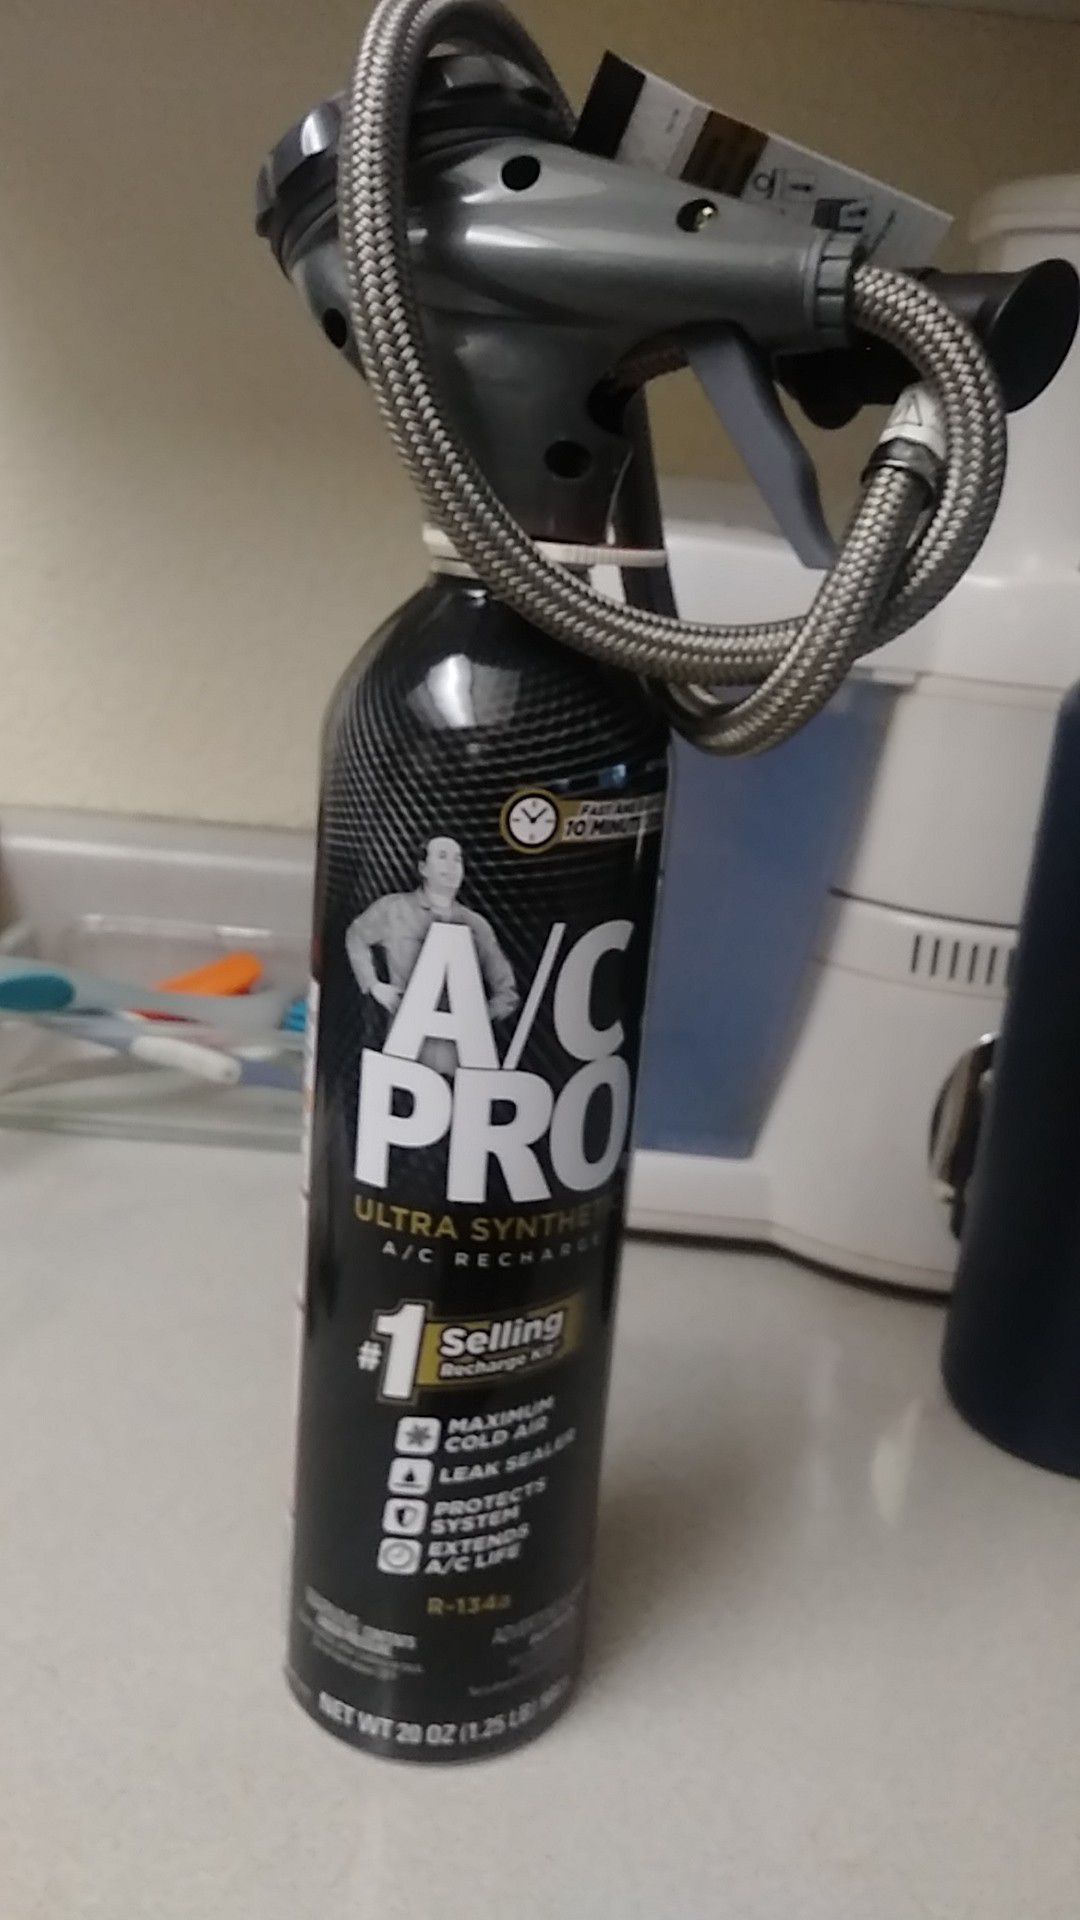 A/C pro